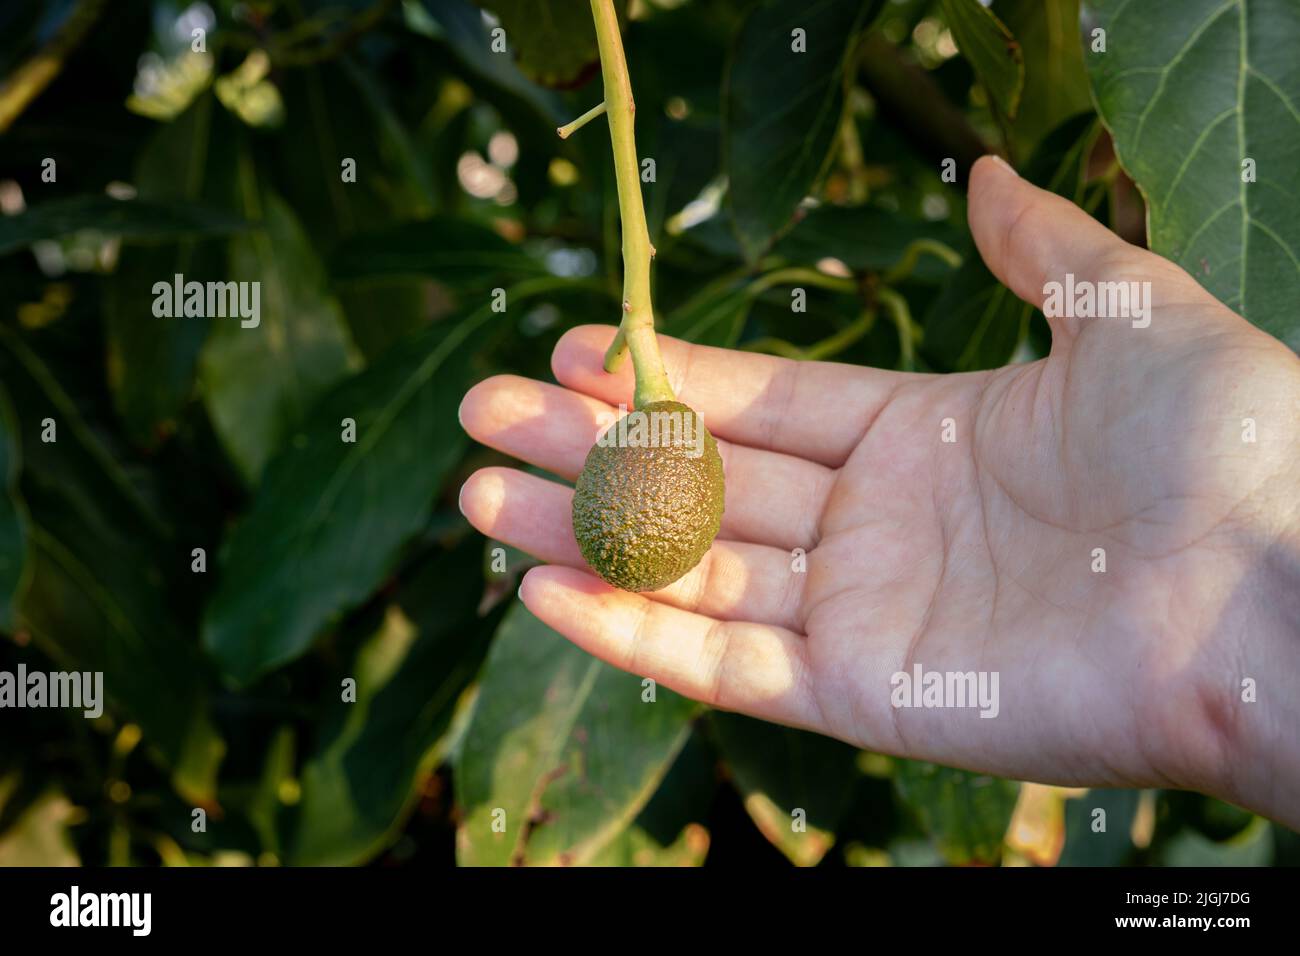 Gros plan de la main d'un fermier et d'un jeune avocado de hass accroché à un arbre dans le verger avec la lumière naturelle Banque D'Images